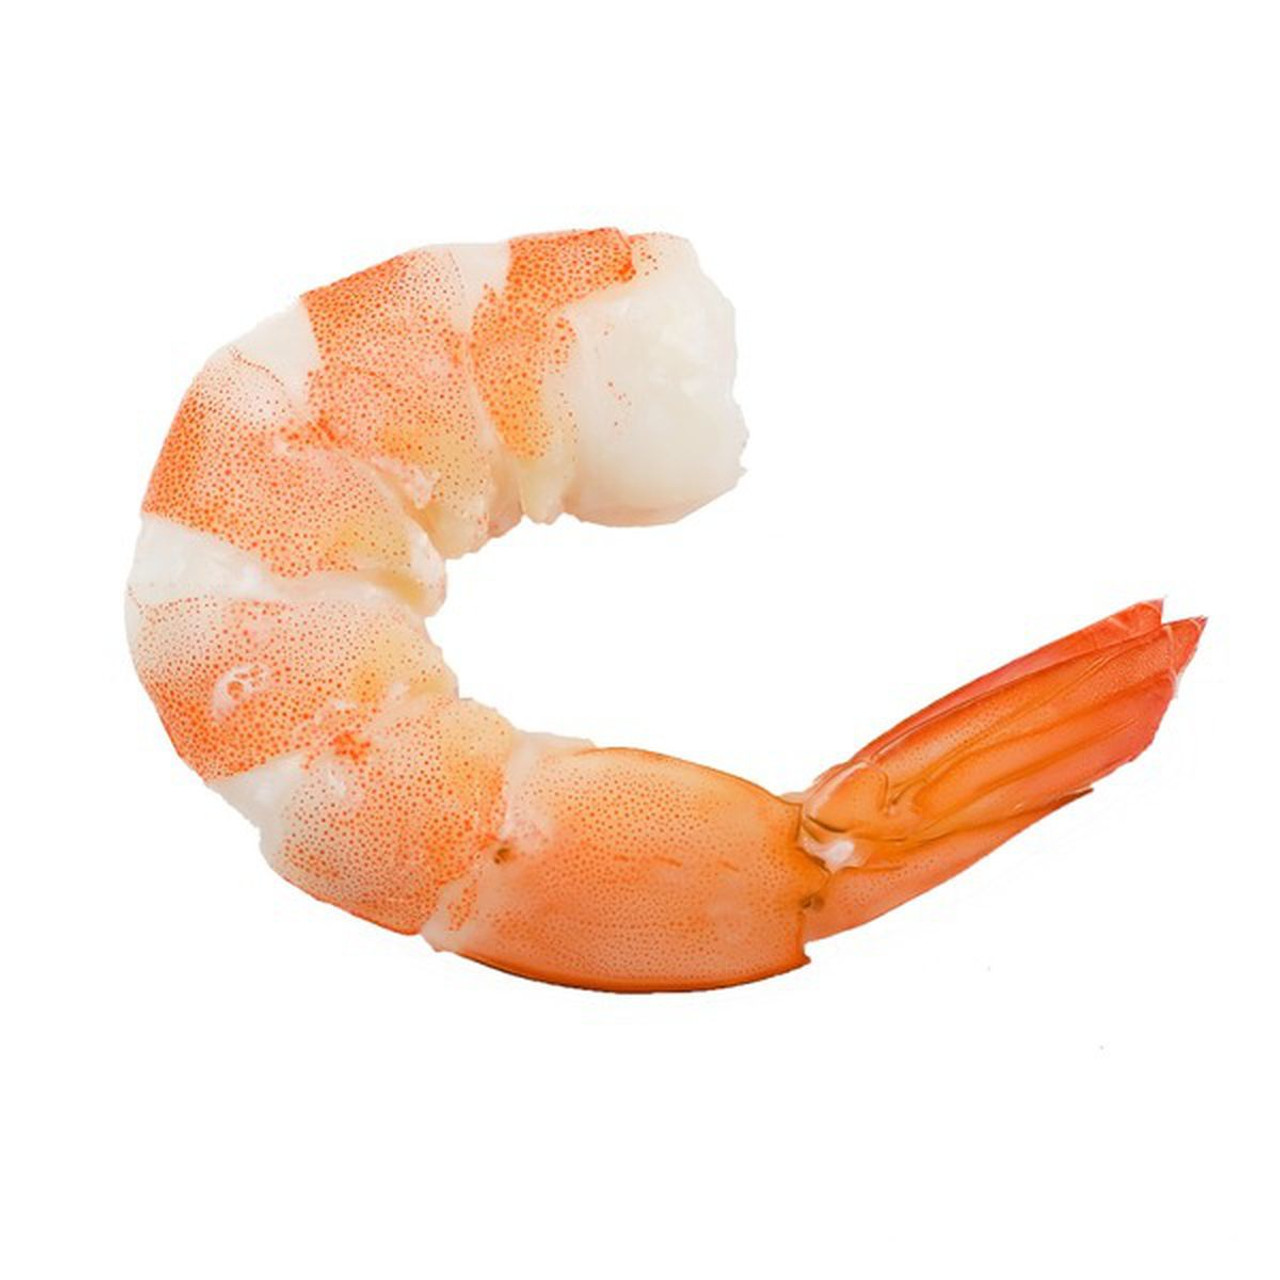 Jumbo Shrimp (Cooked, P+D) / lb.